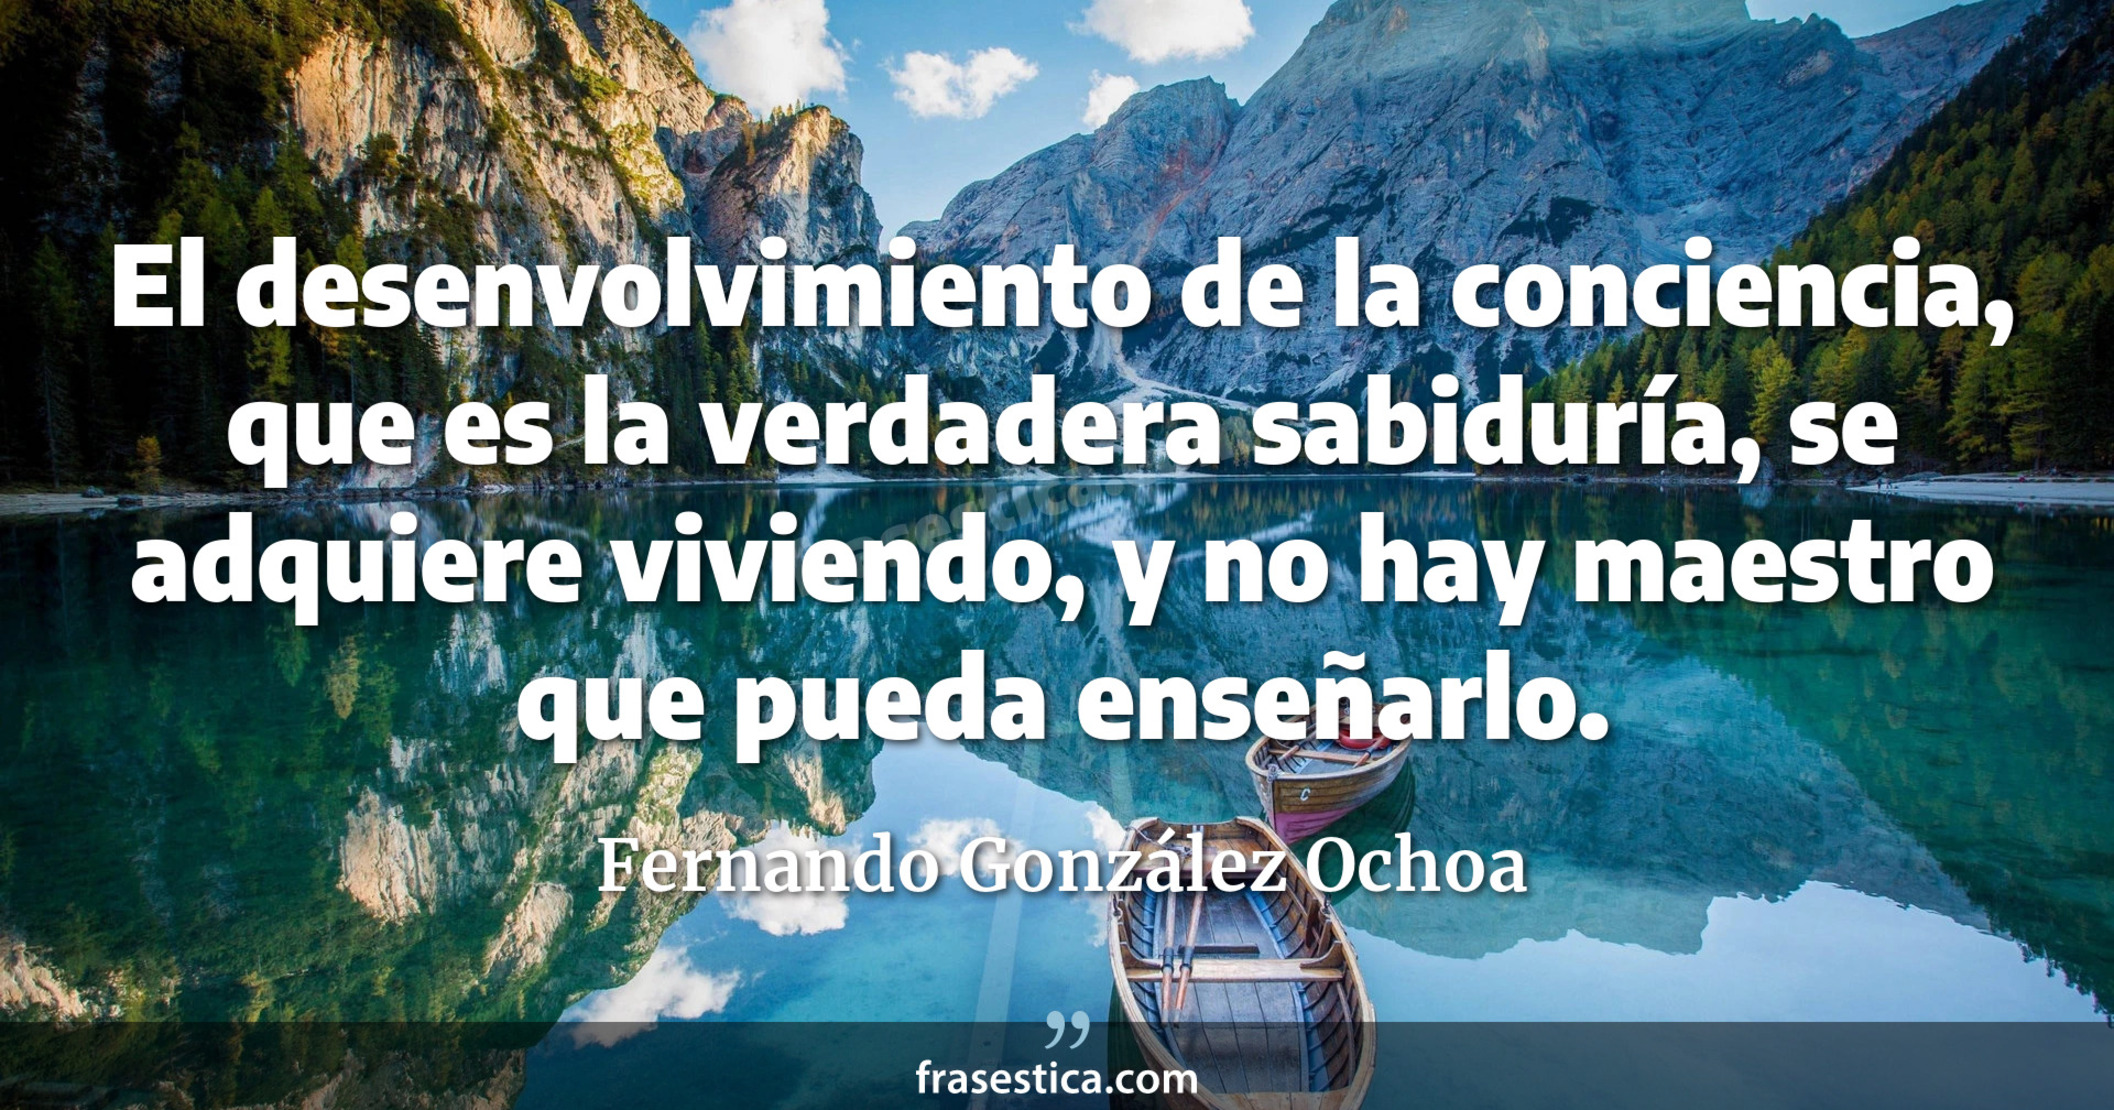 El desenvolvimiento de la conciencia, que es la verdadera sabiduría, se adquiere viviendo, y no hay maestro que pueda enseñarlo. - Fernando González Ochoa